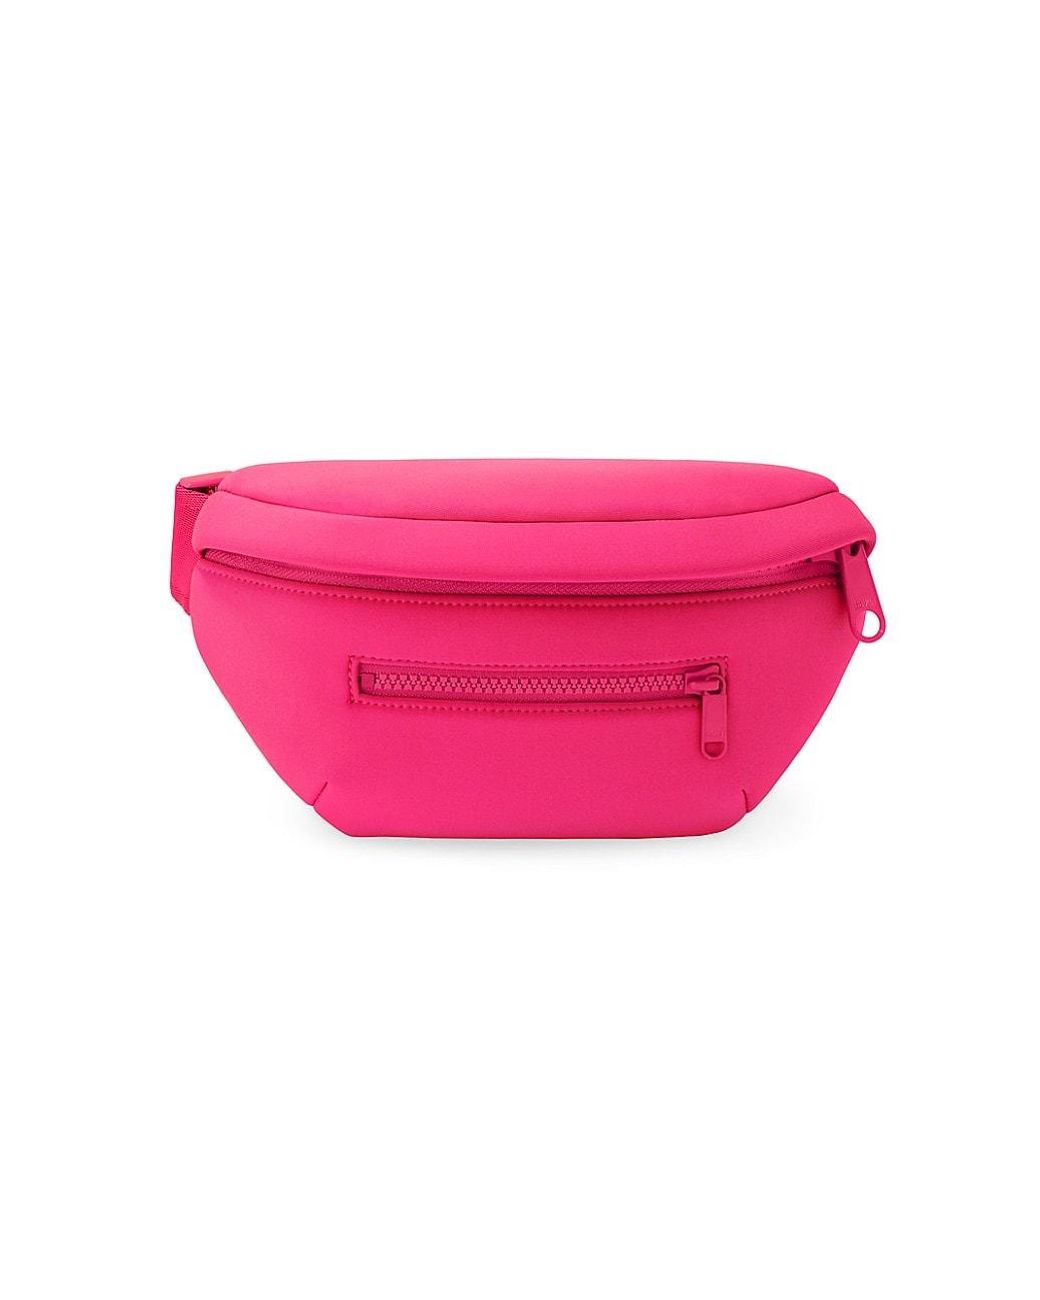 Dagne Dover 365 Neoprene Ace Sling Bag in Pink | Lyst